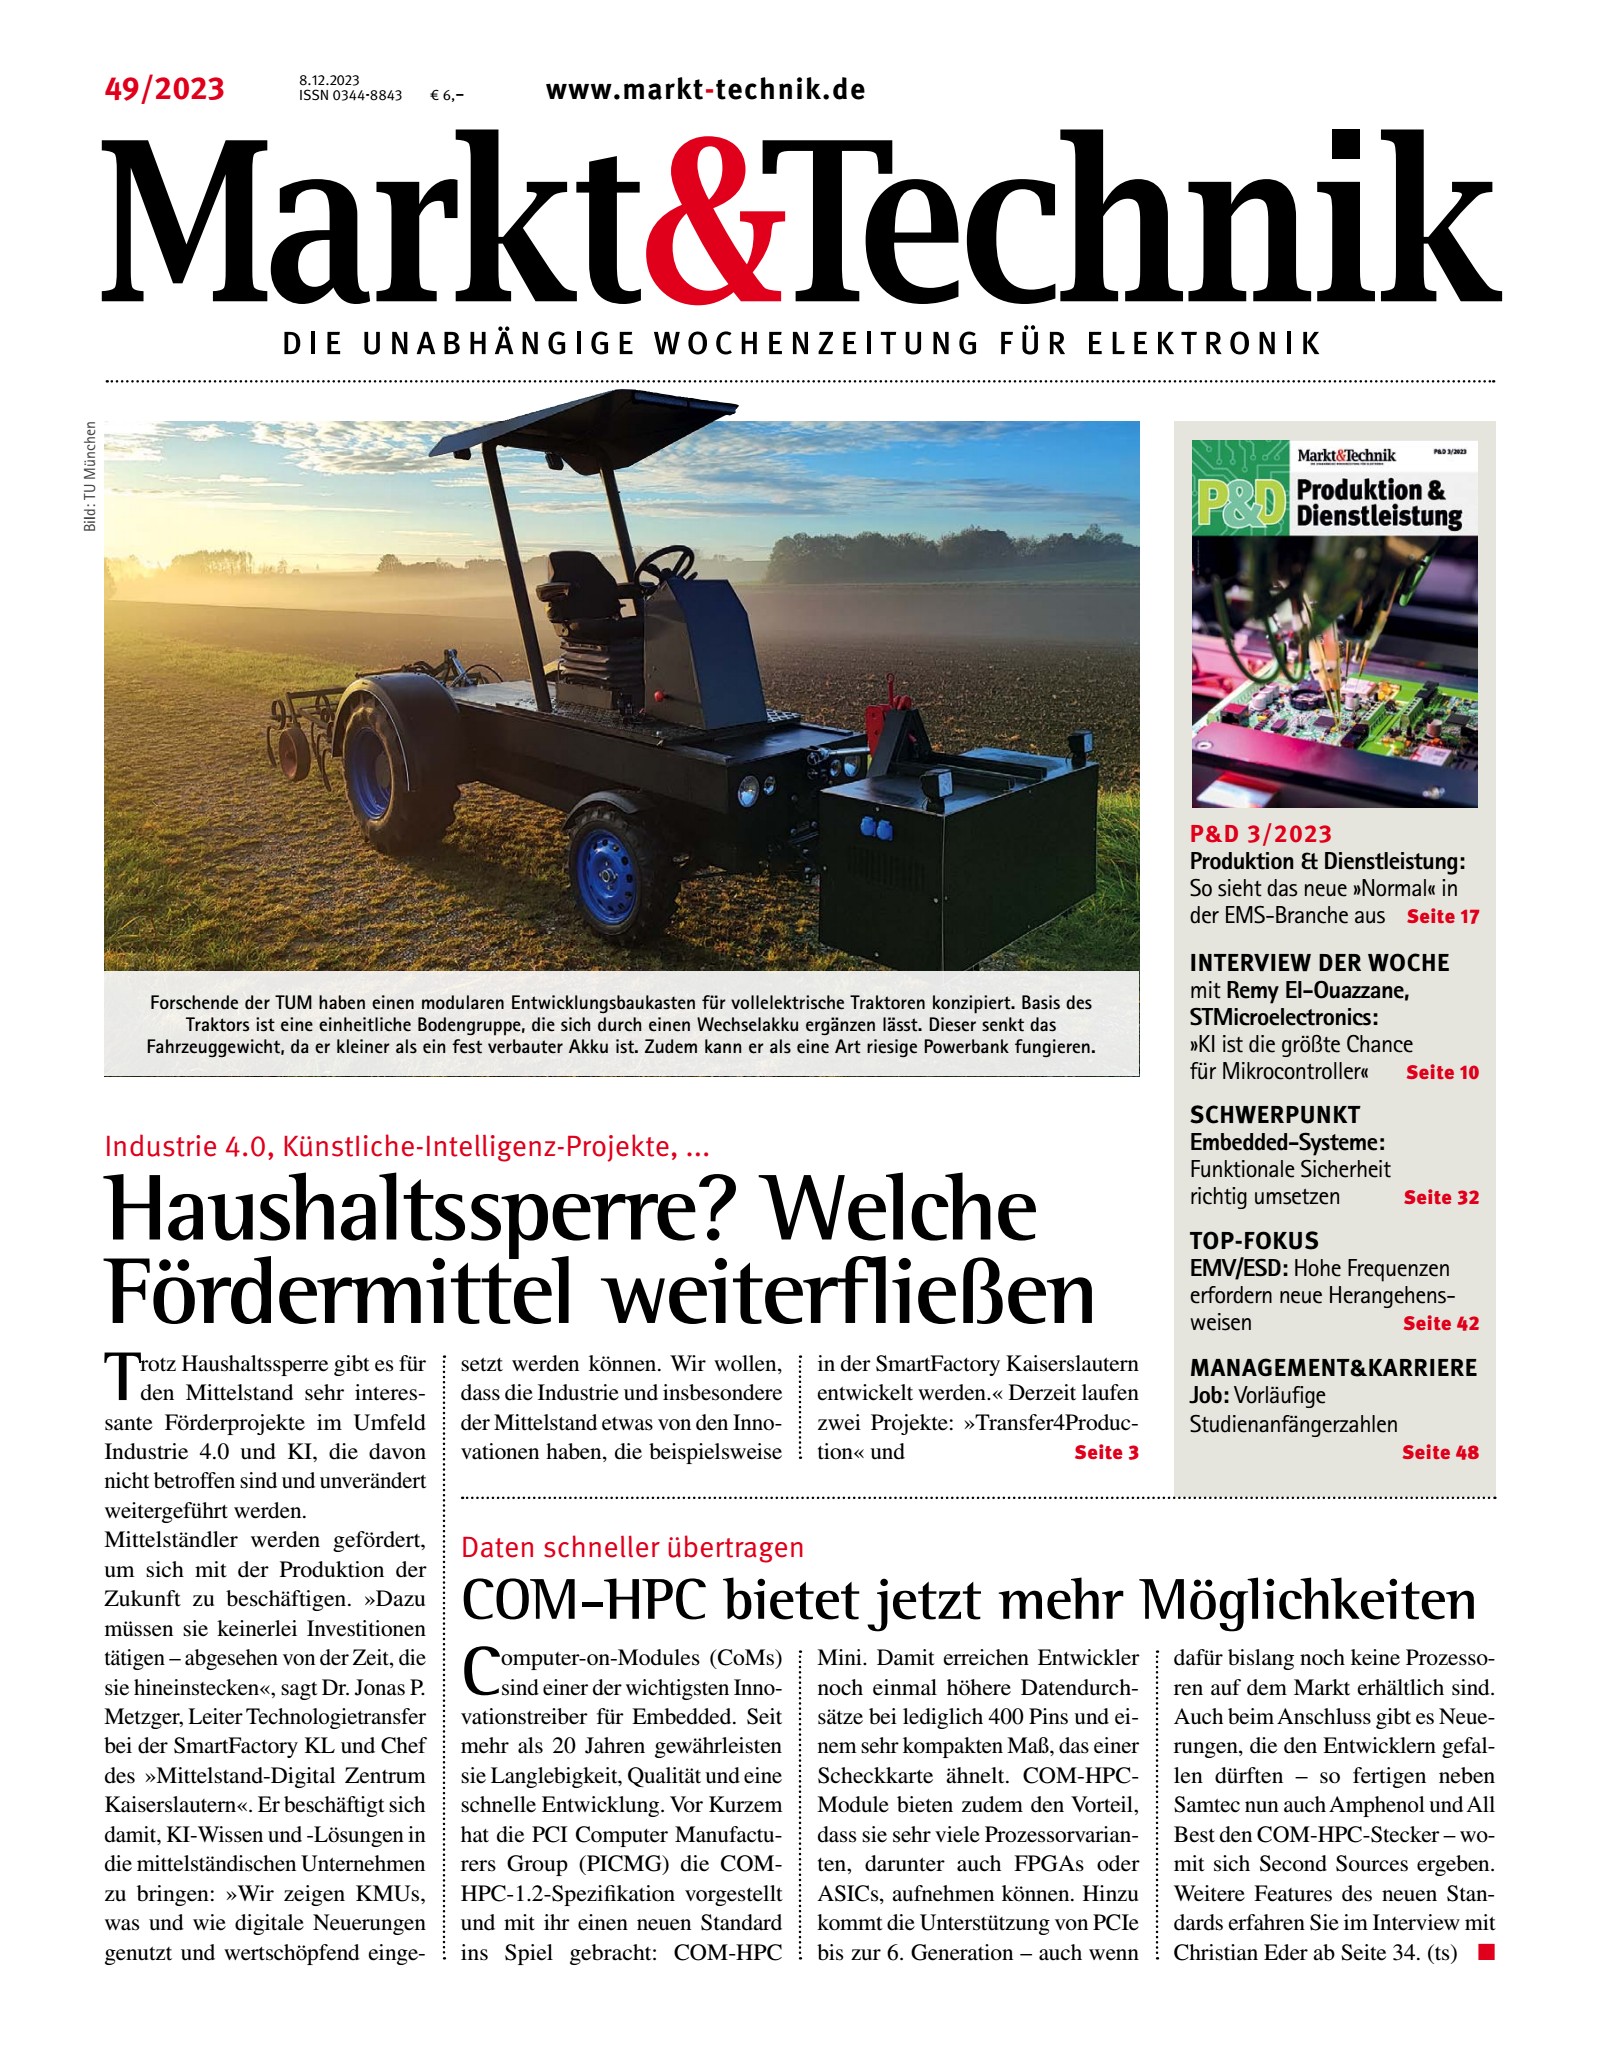 Markt&Technik 0049/2023 Digital